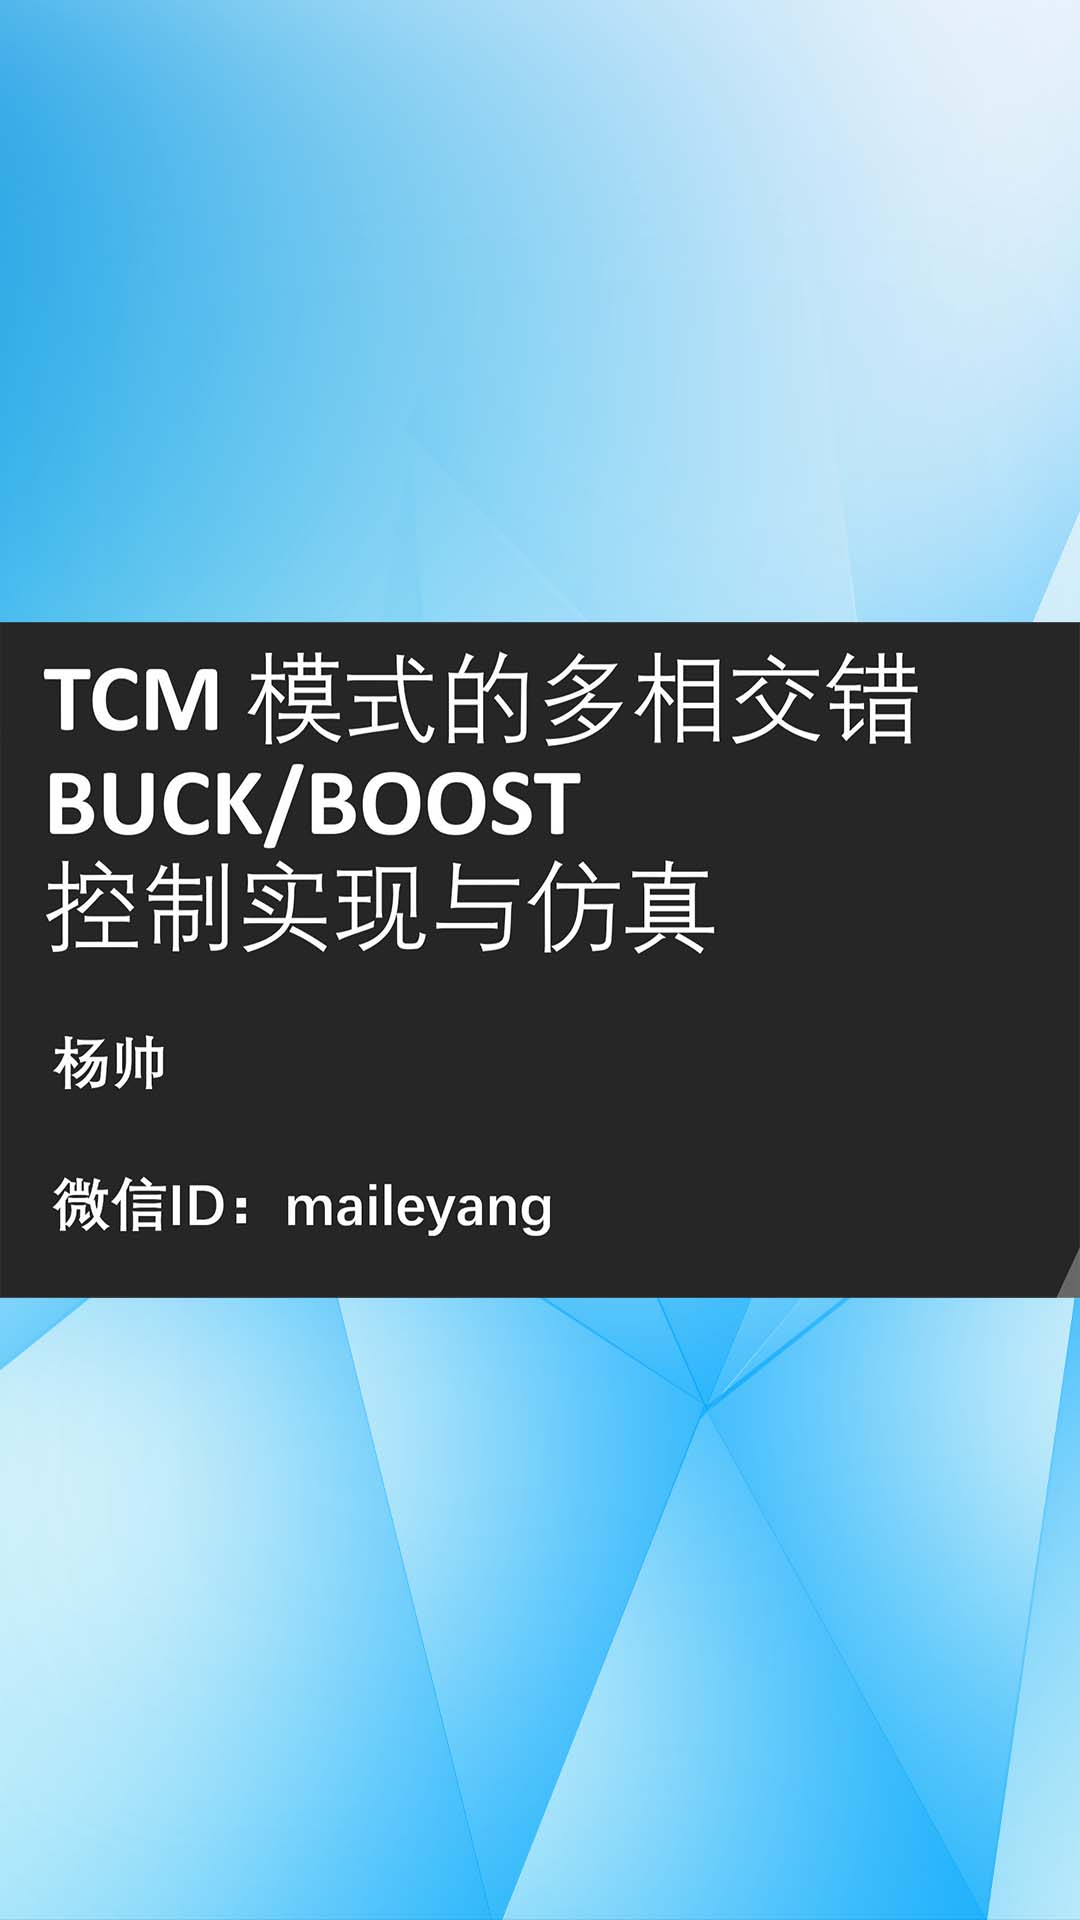 TCM 模式的多相交錯BUCKBOOST 控制實現與仿真-2.